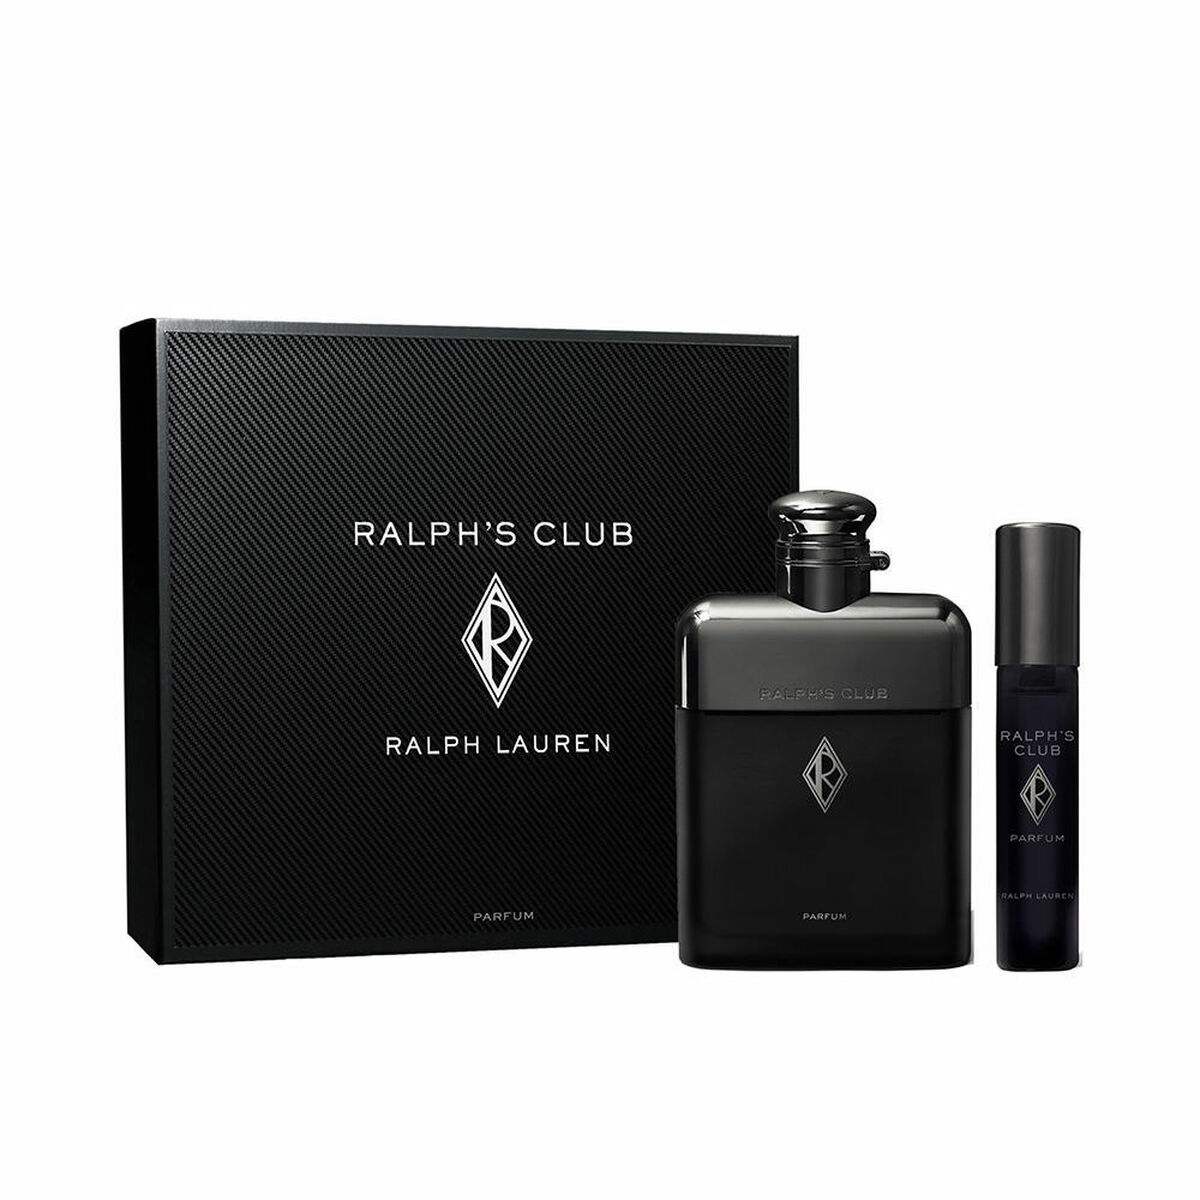 Parfume sæt til mænd Ralph Lauren Ralph's Club 2 Dele